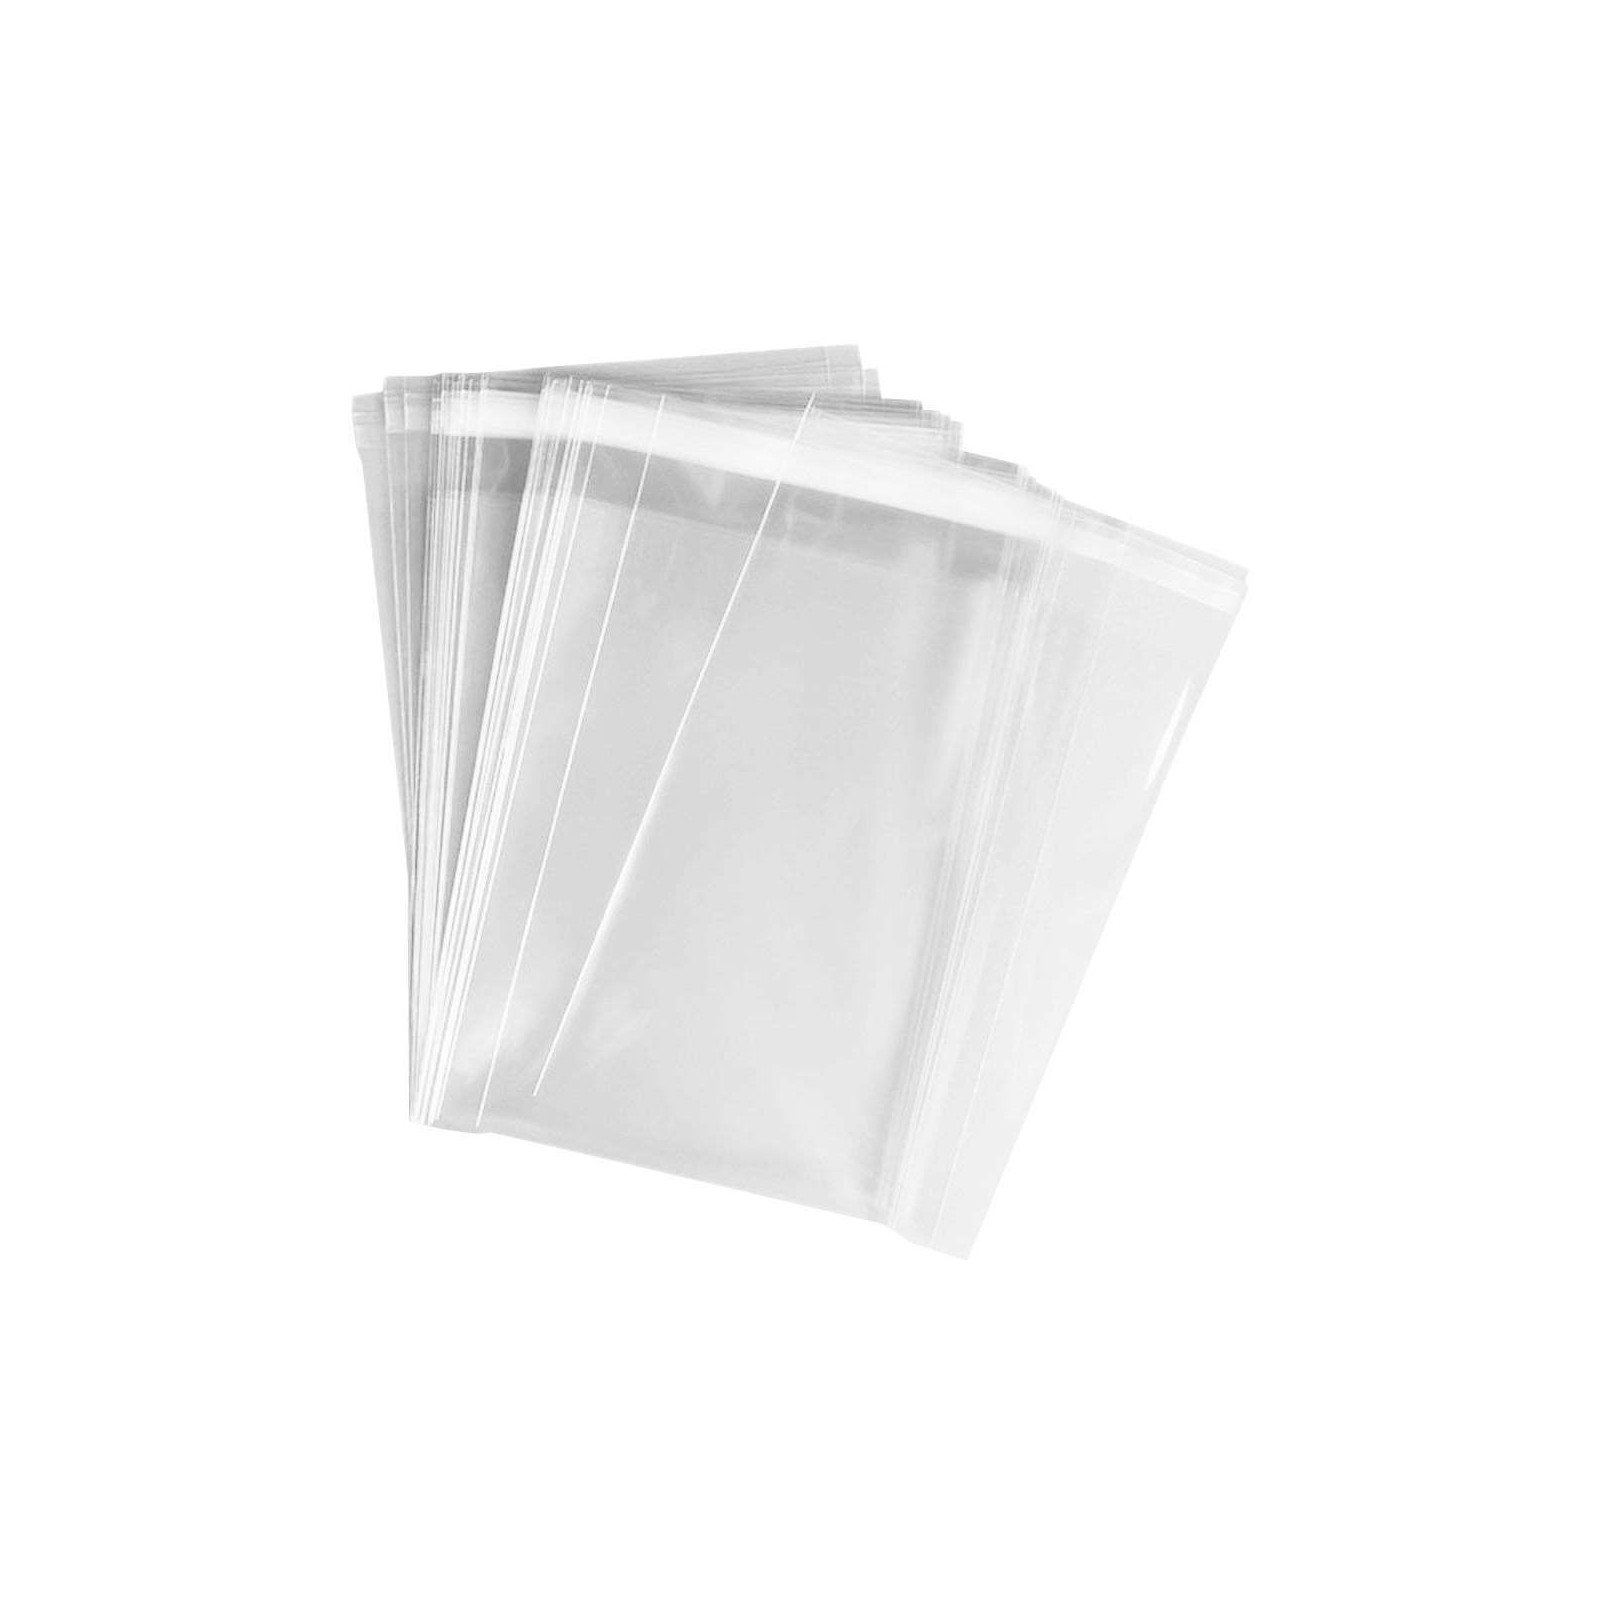 Sacos de polipropileno com abas adesivas transparentes